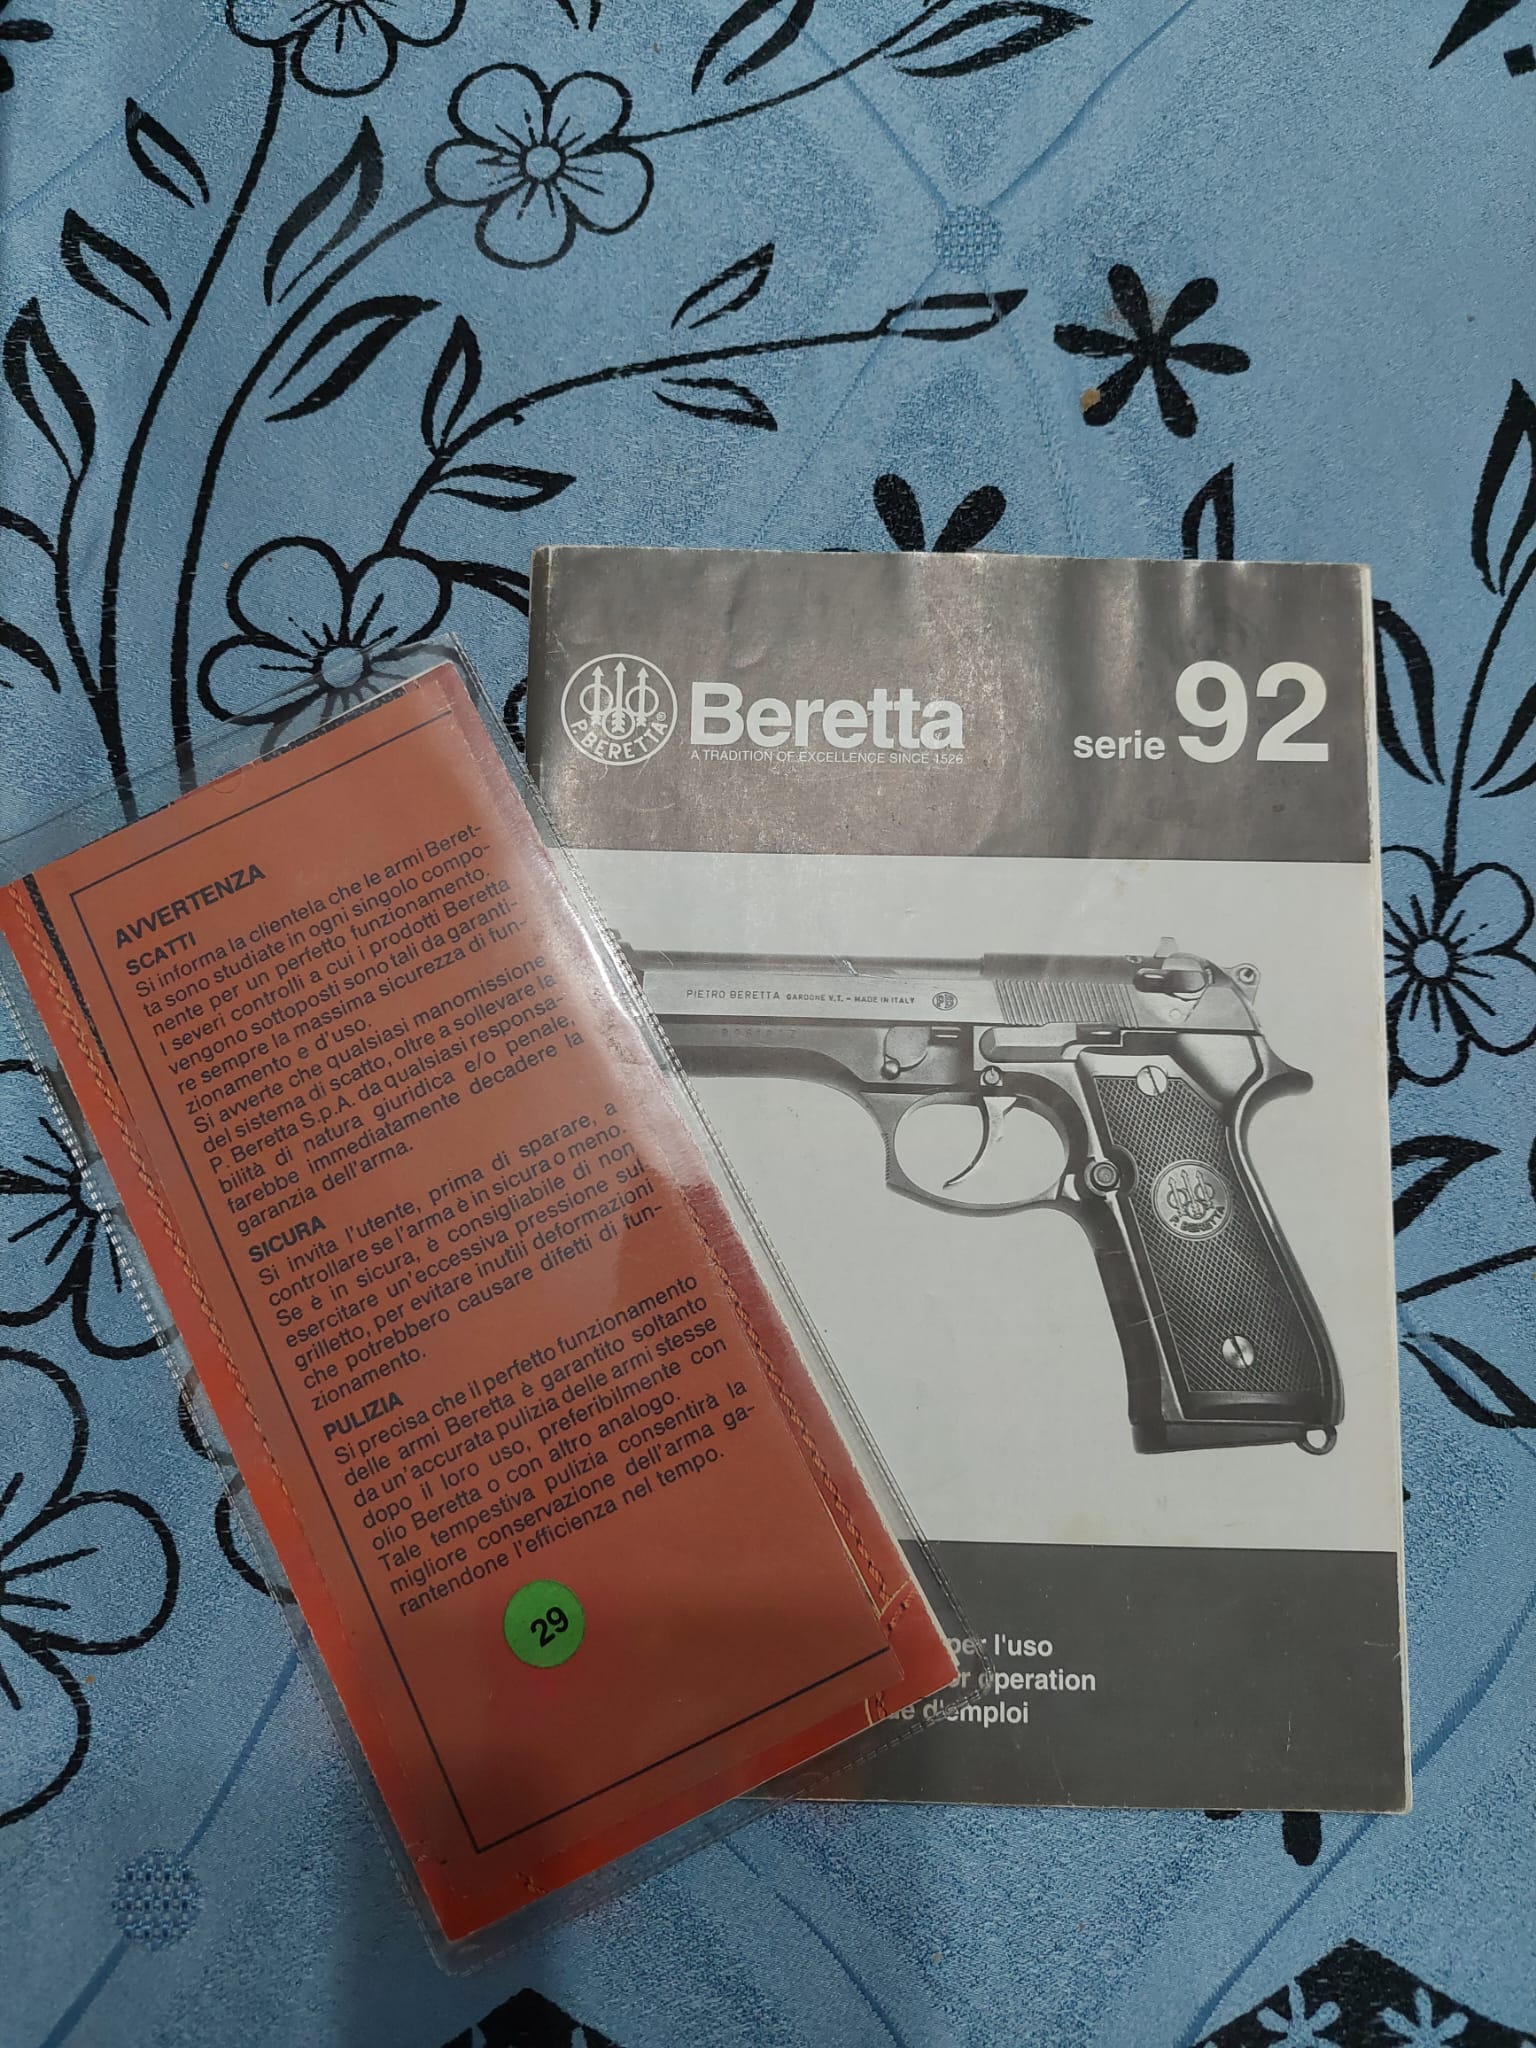 Sifir Beretta Fs 92 15+1